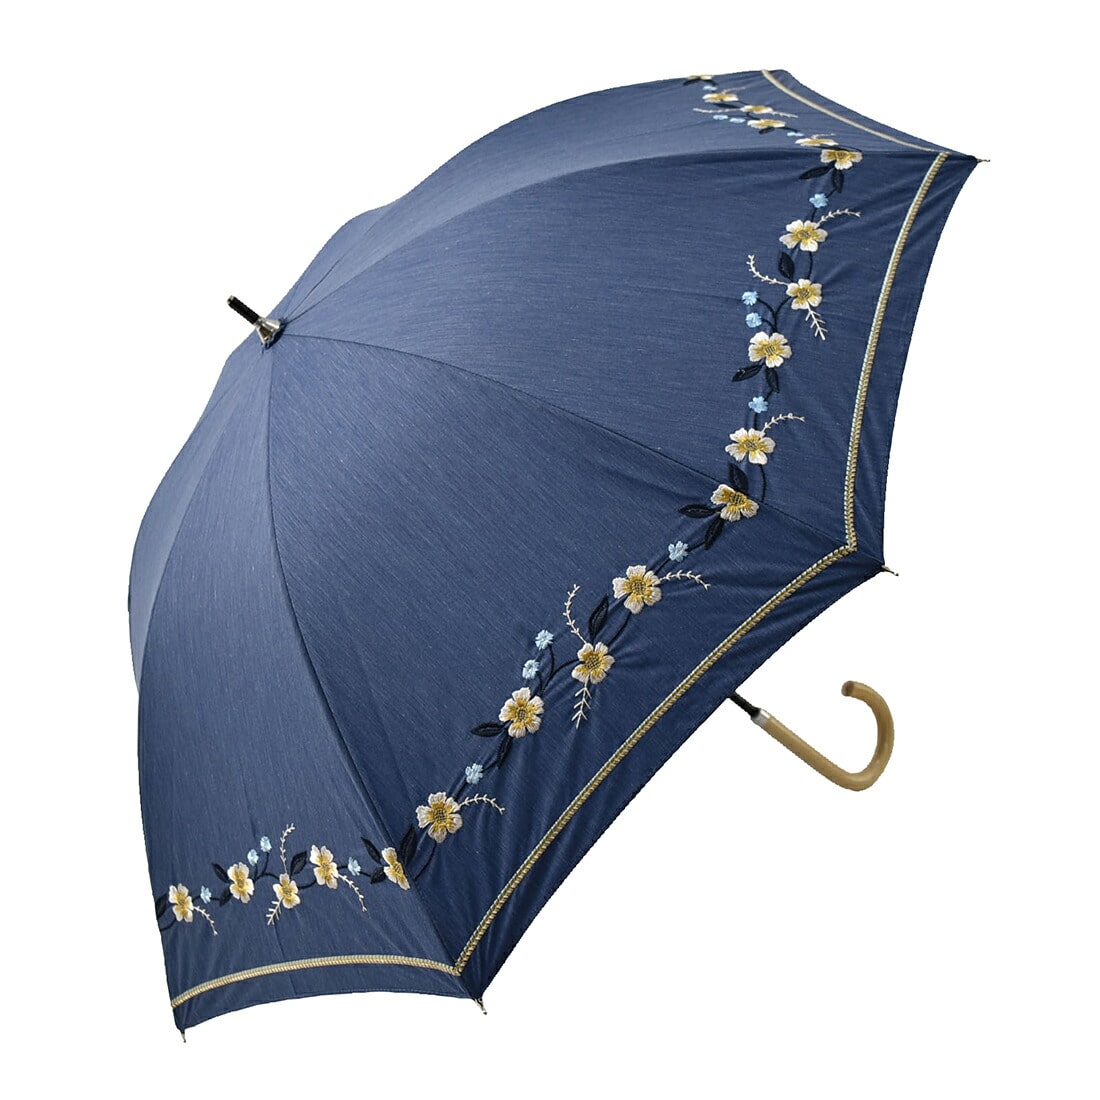 晴雨兼用 日傘 雨傘 長傘 because ボーホーフラワー刺繍 47cm 全3色